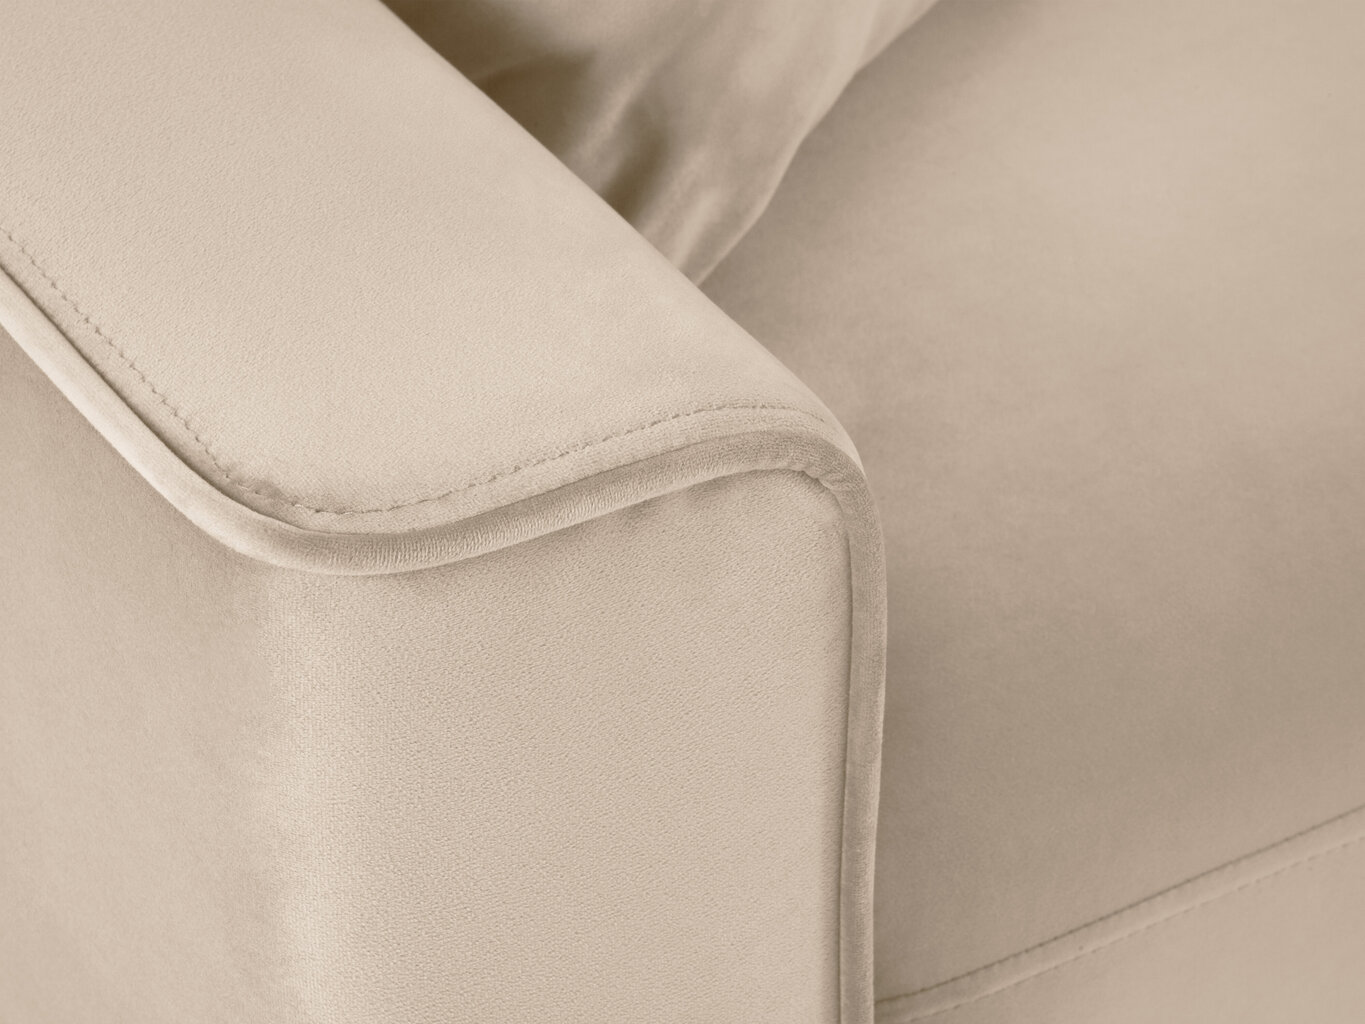 Trīsvietīgs dīvāns Sofas Cartadera, smilškrāsas/melns cena un informācija | Dīvāni | 220.lv